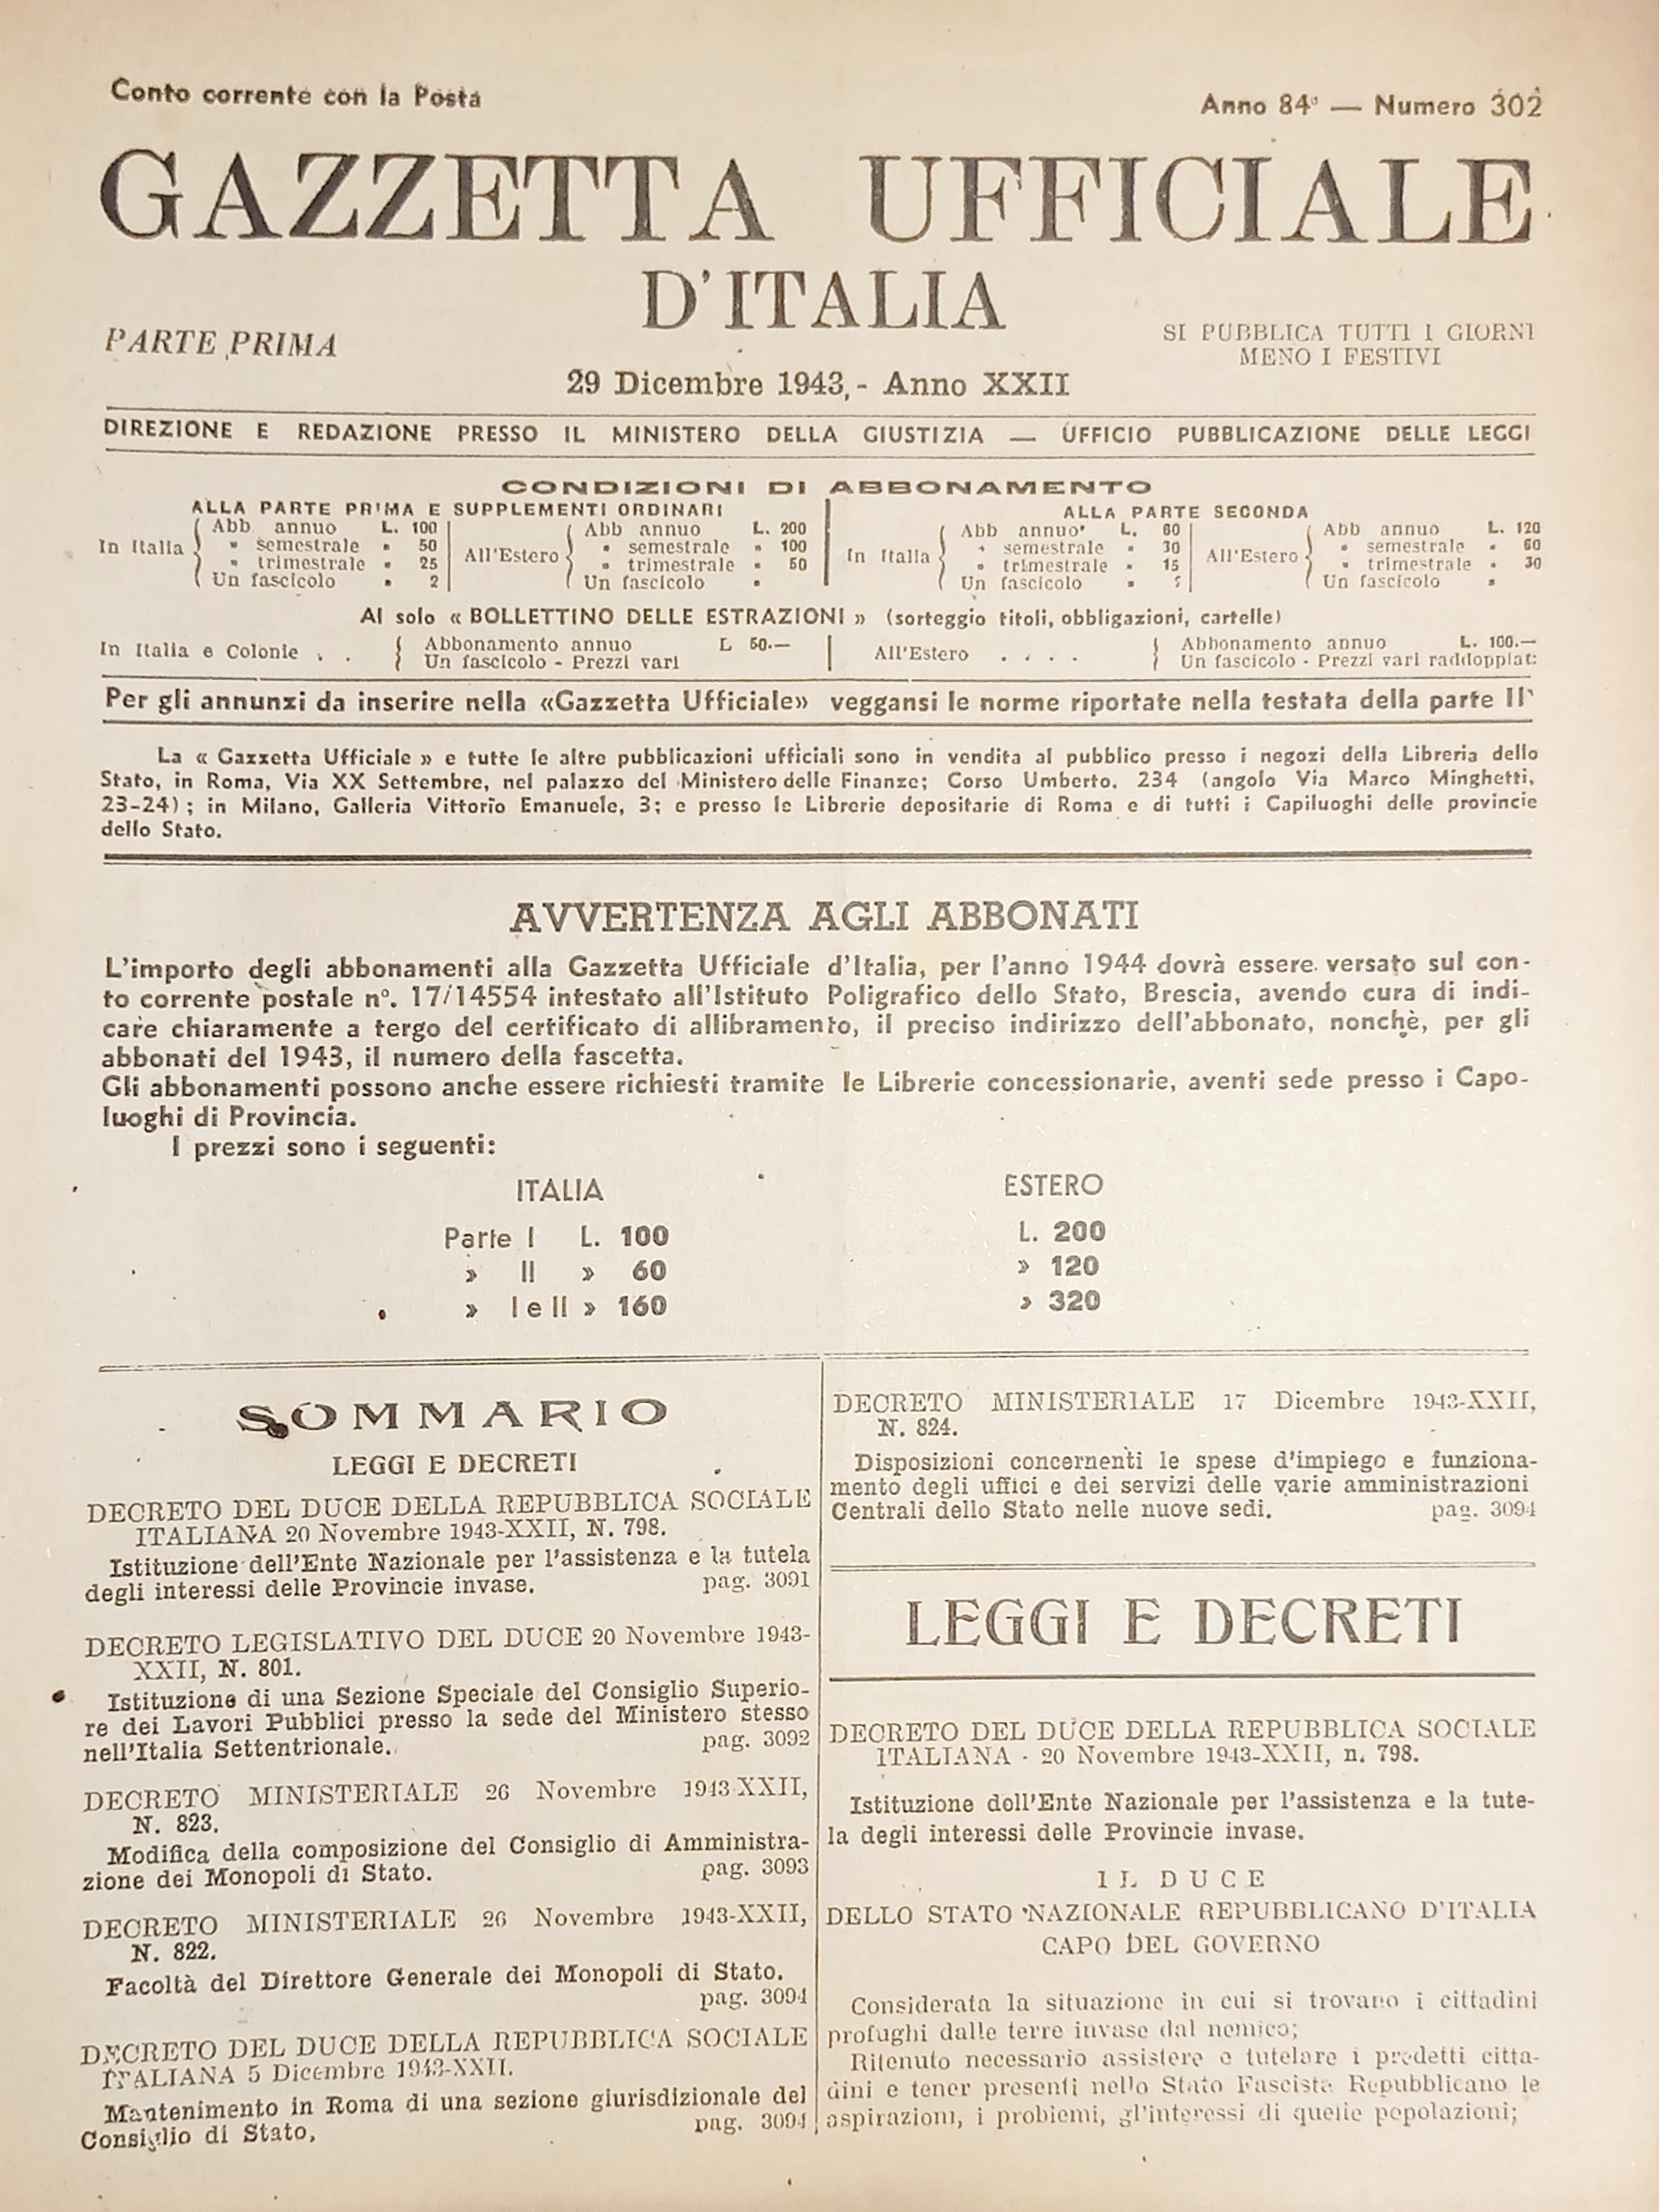 RSI Gazzetta Ufficiale d'Italia N. 302 - 1943